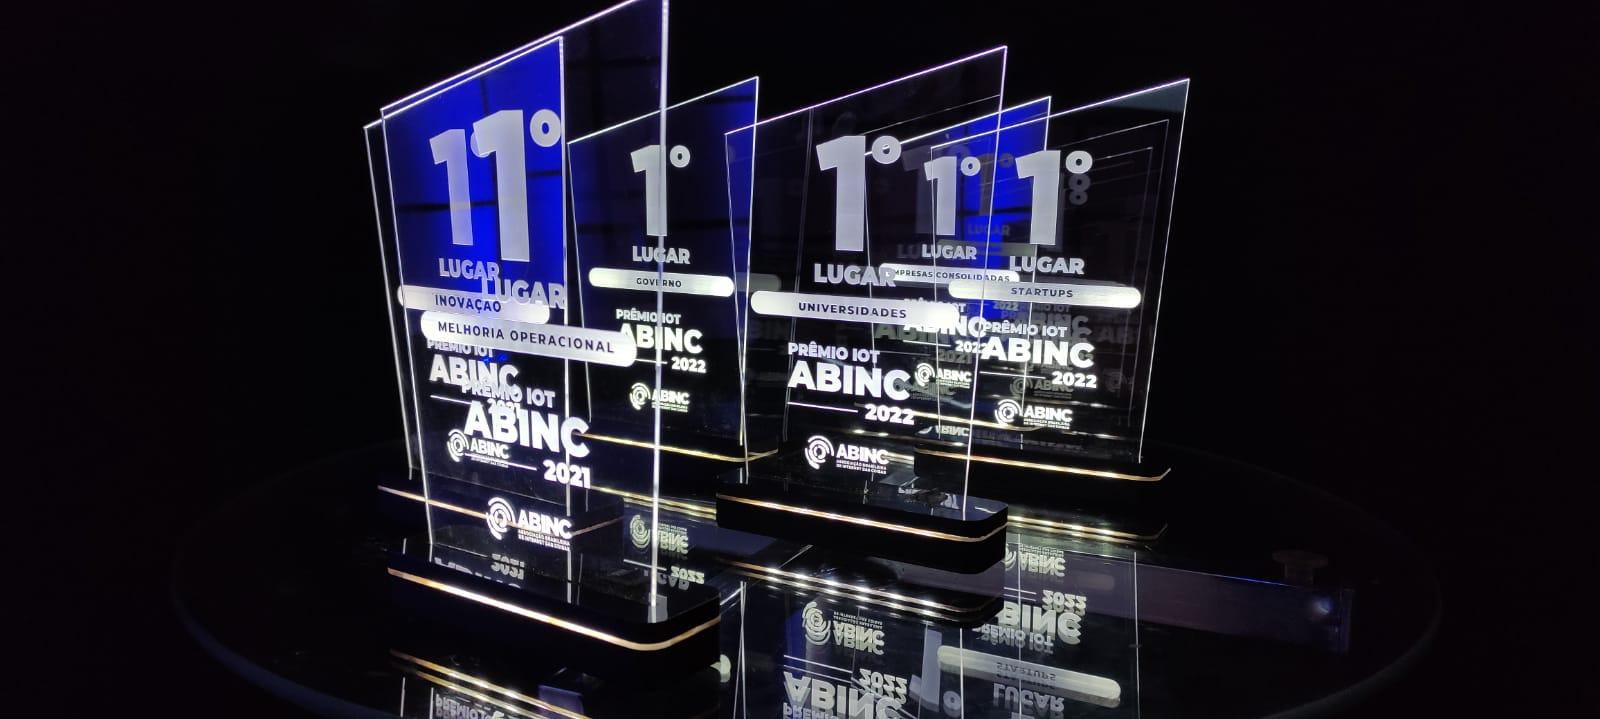 Abinc anuncia vencedores do Prêmio IoT 2022